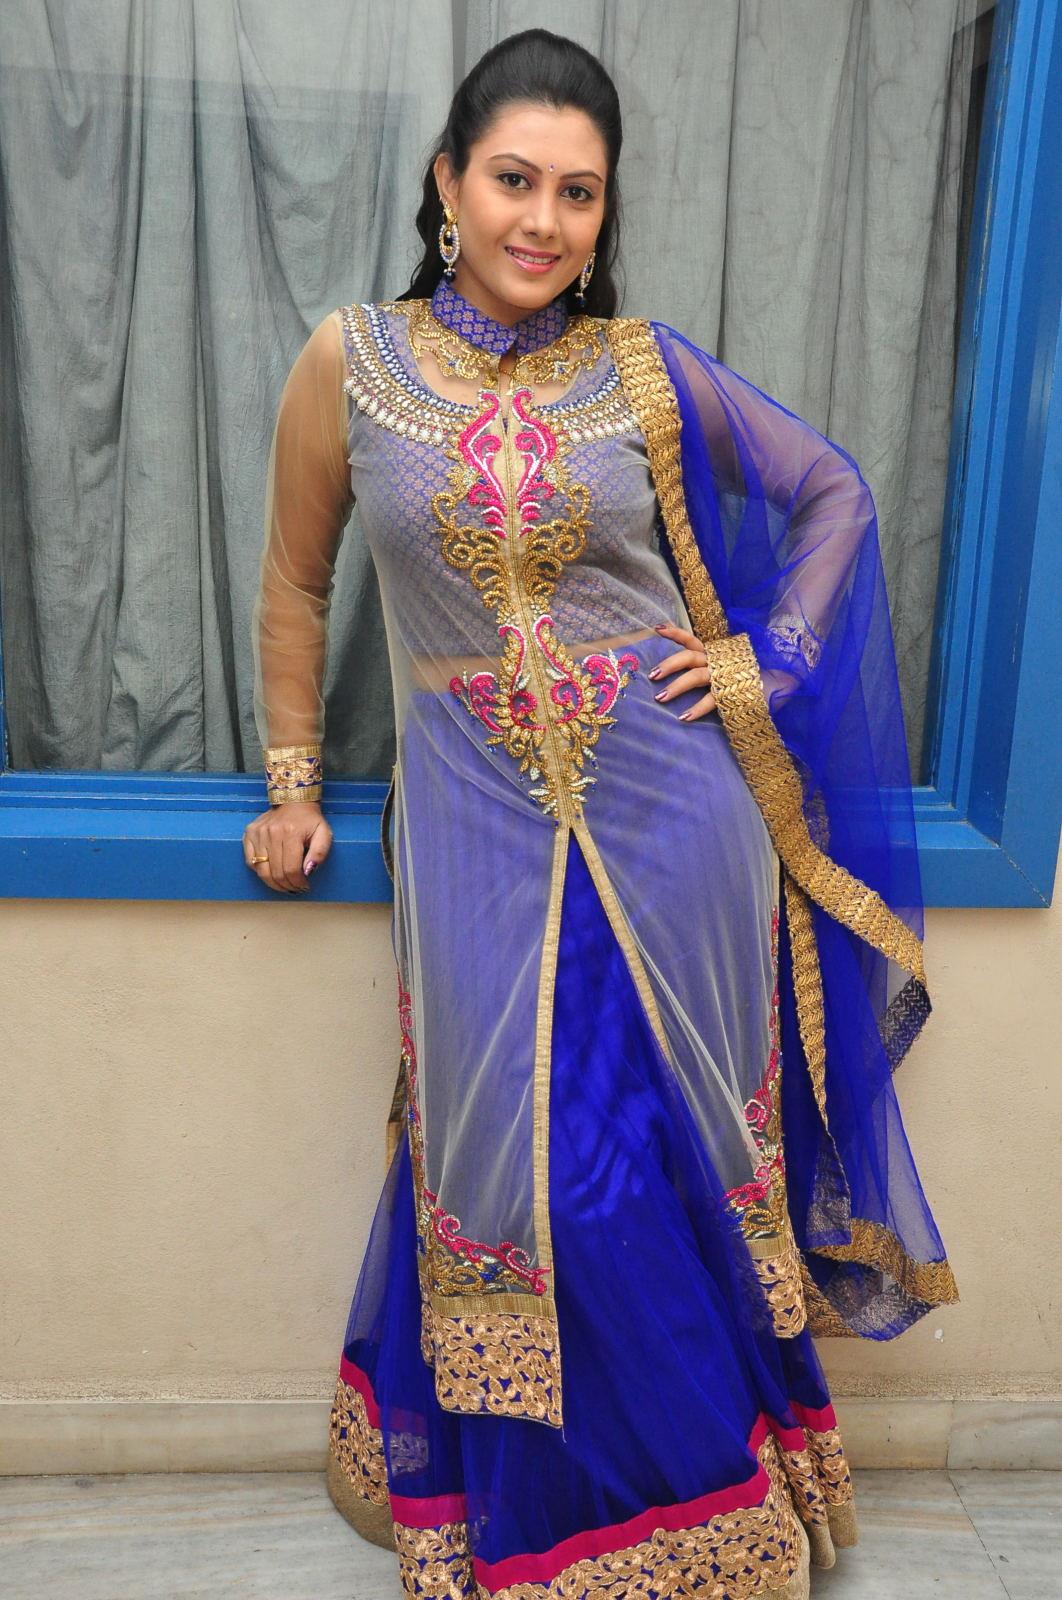 Telugu TV Actress Priyanka Photo Shoot In Blue Dress